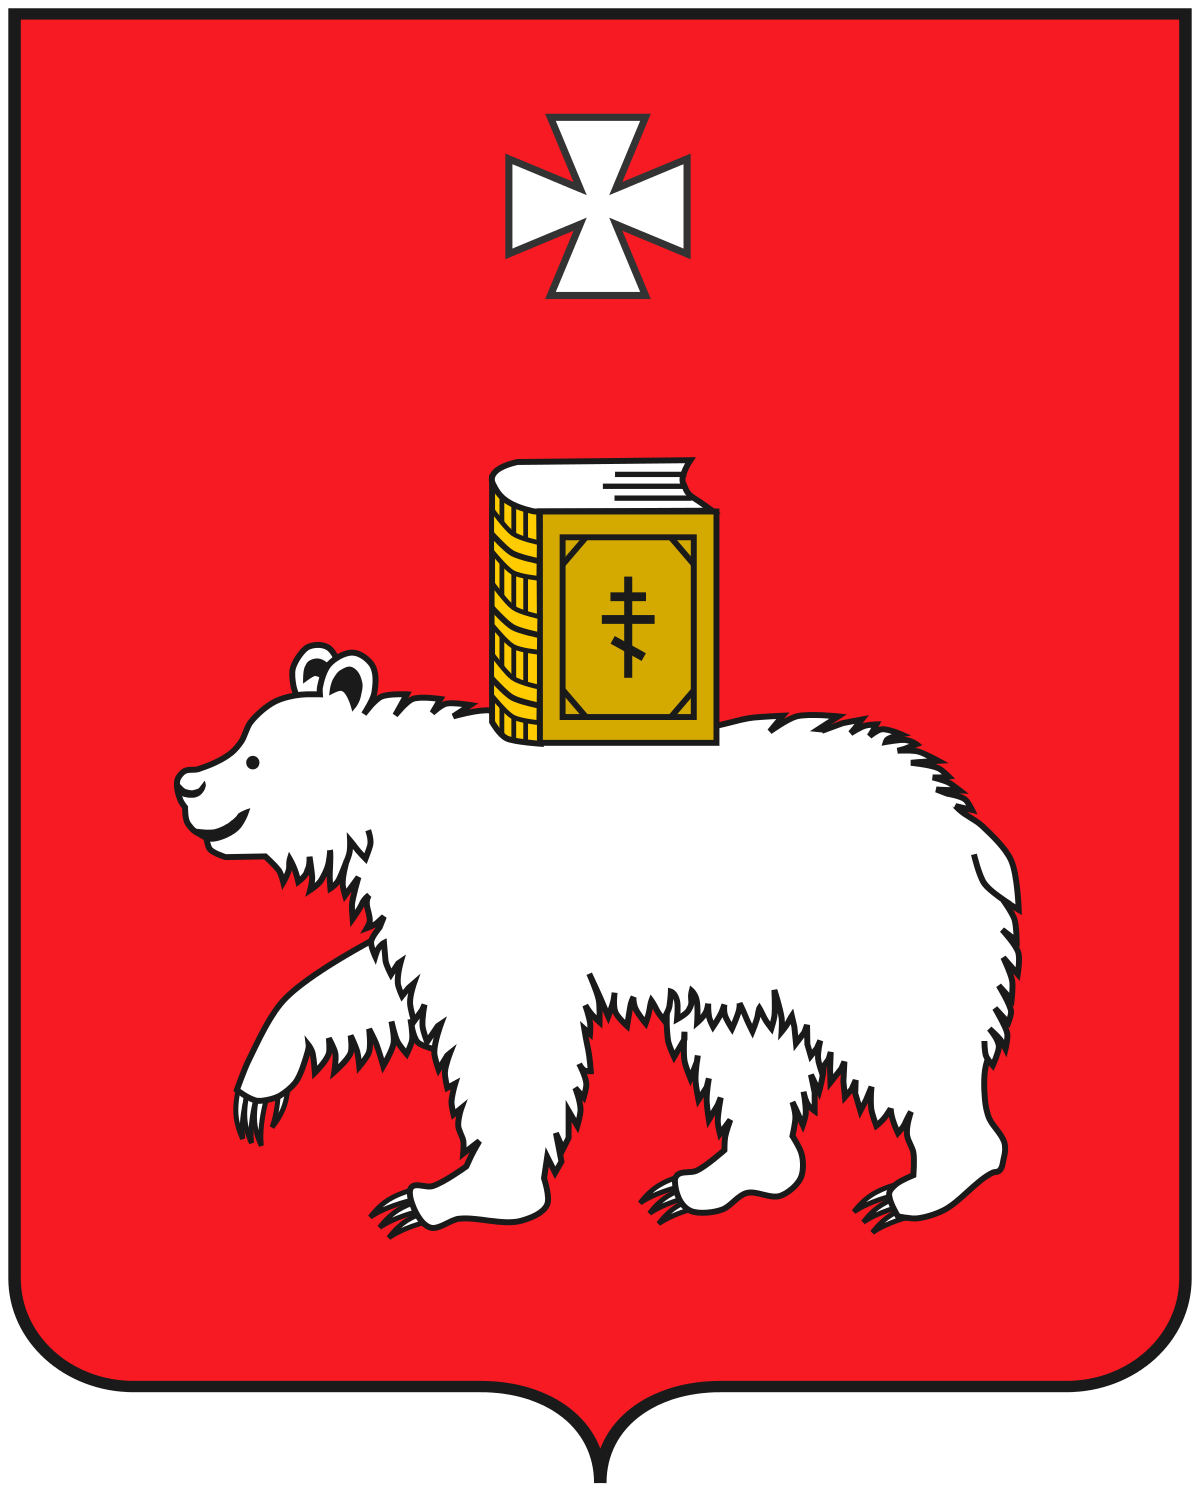 герб Пермь